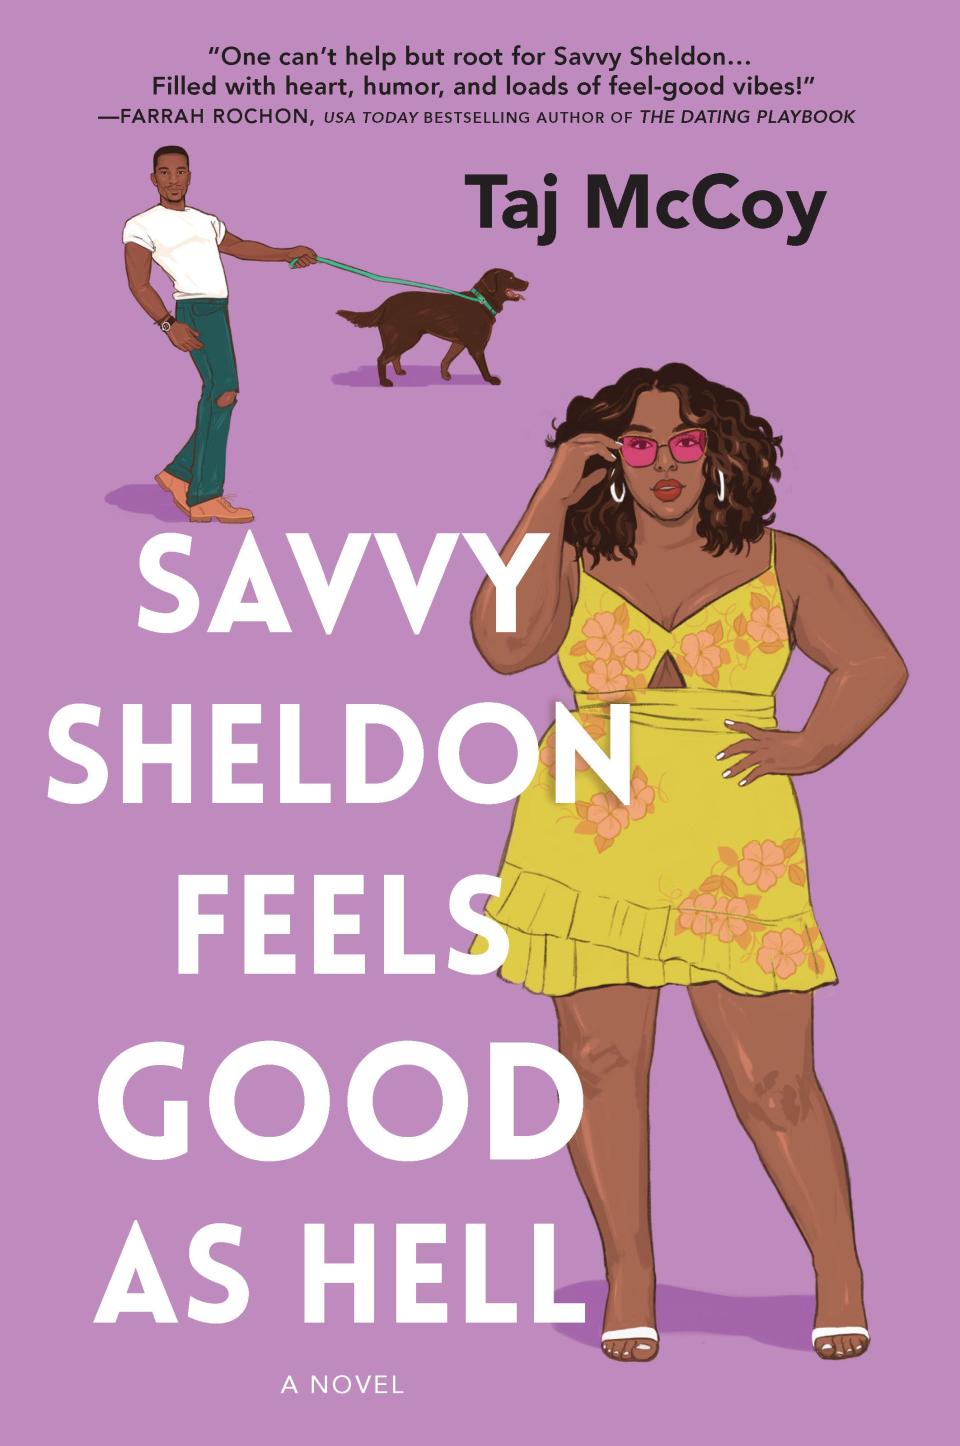 "Savvy Sheldon Feels Good as Hell," by Taj McCoy